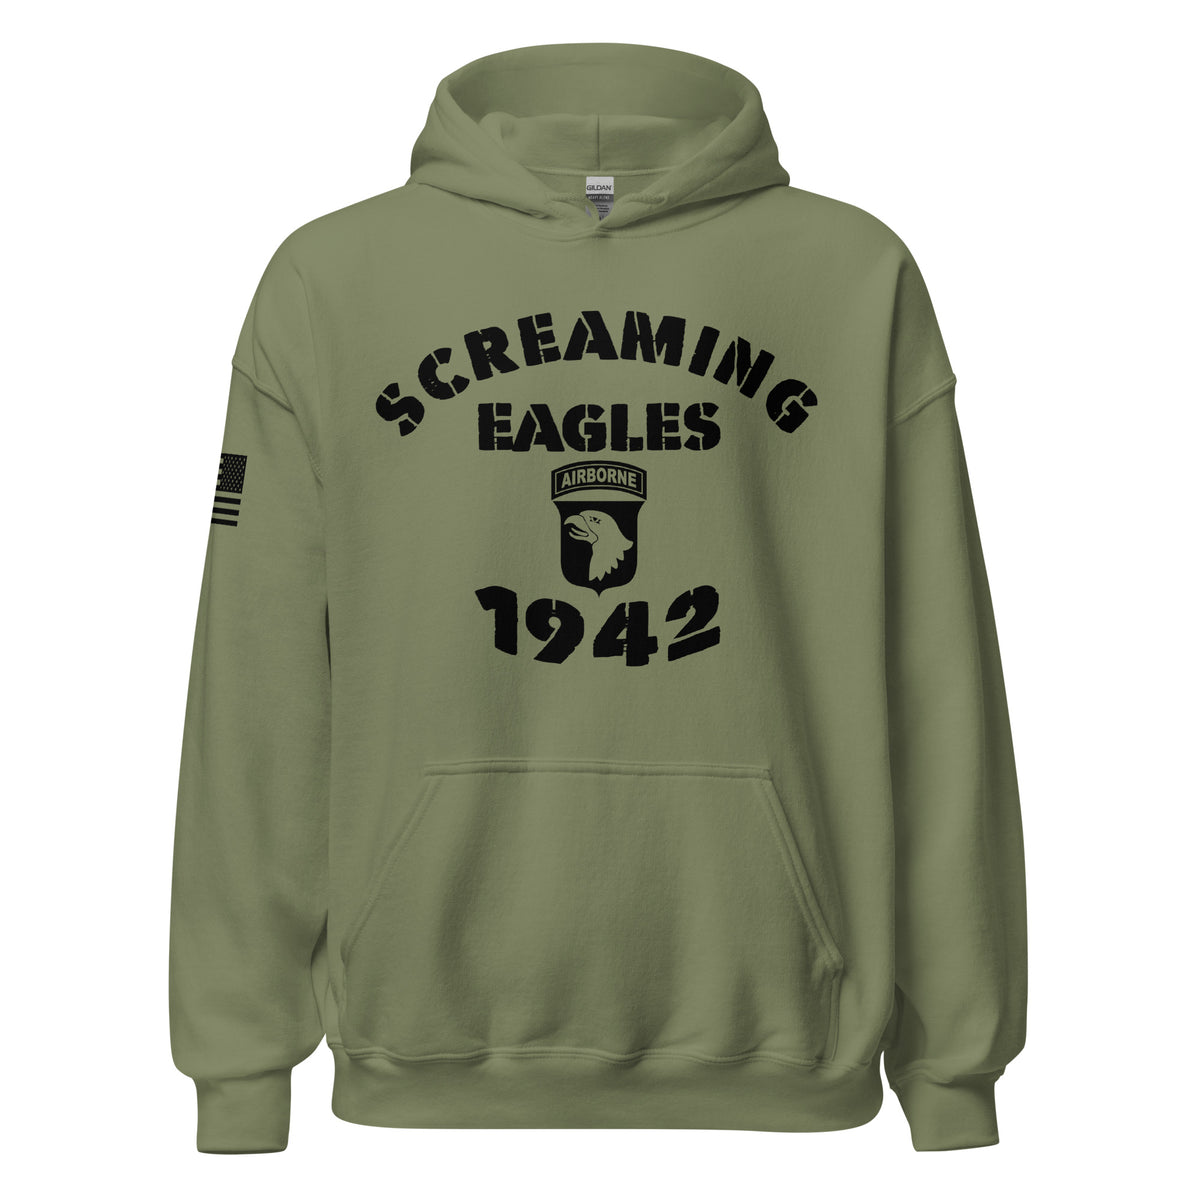 Screaming Eagles 1942 Hoodie